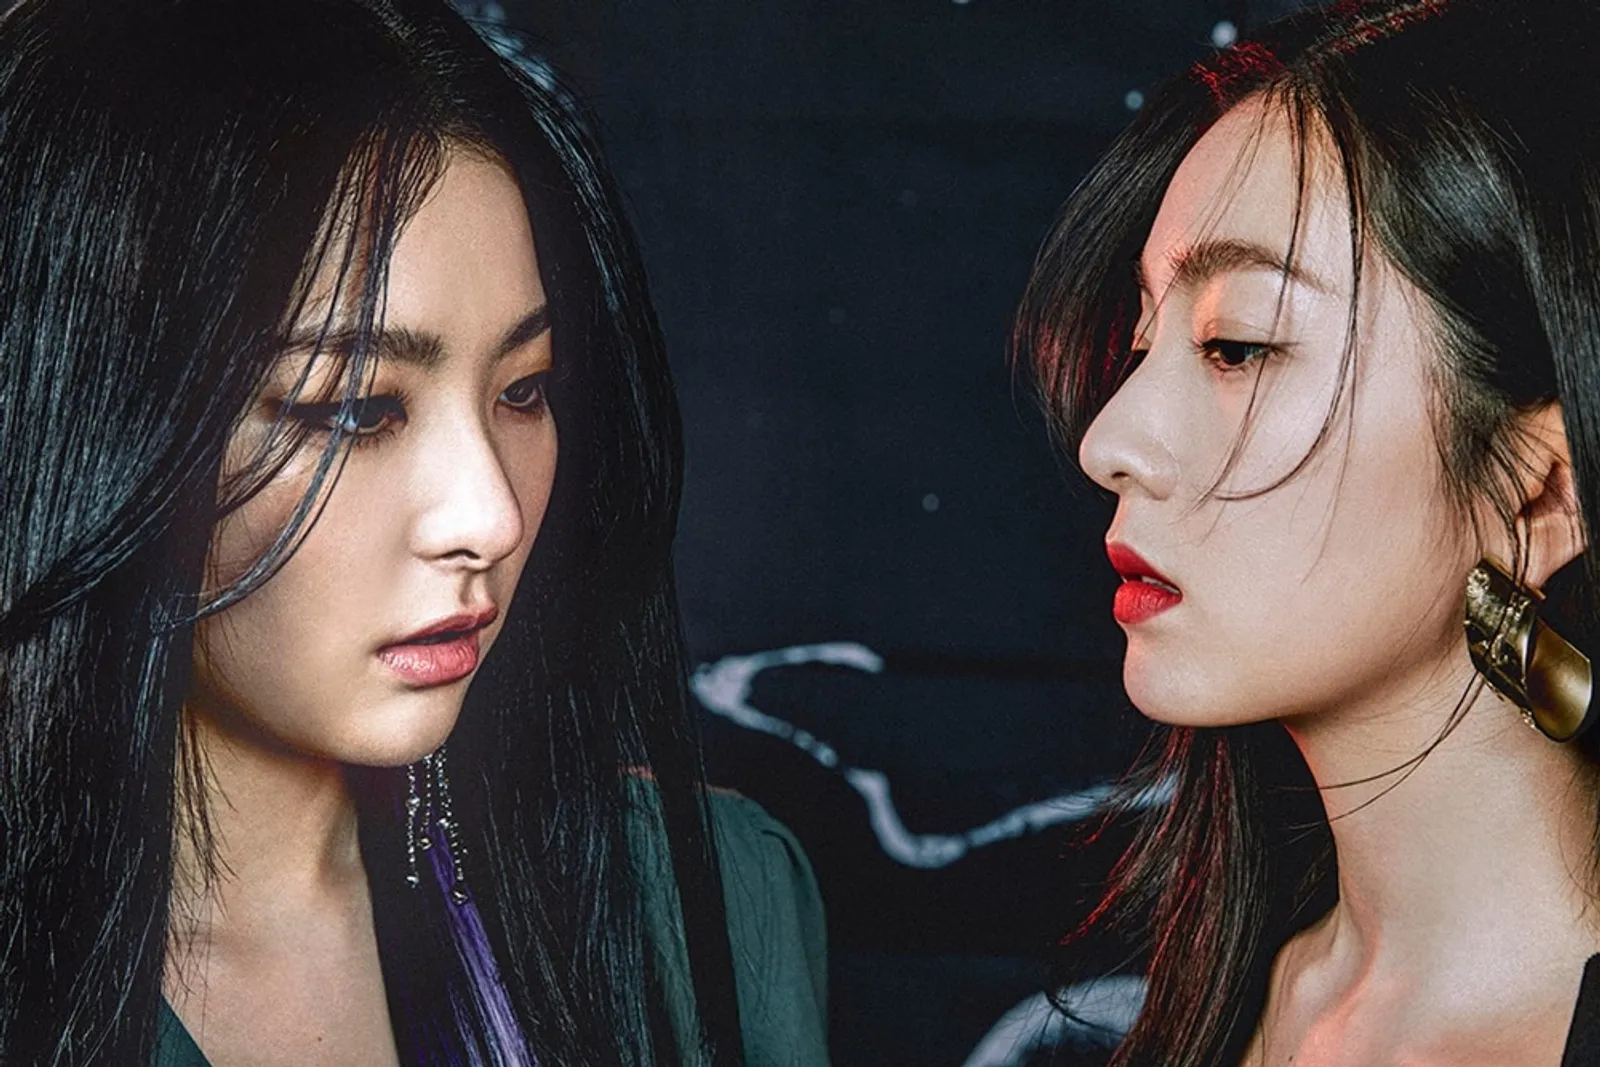 Resmi Debut, Irene & Seulgi Tampilkan 7 Hal Menarik dari MV "Monster"